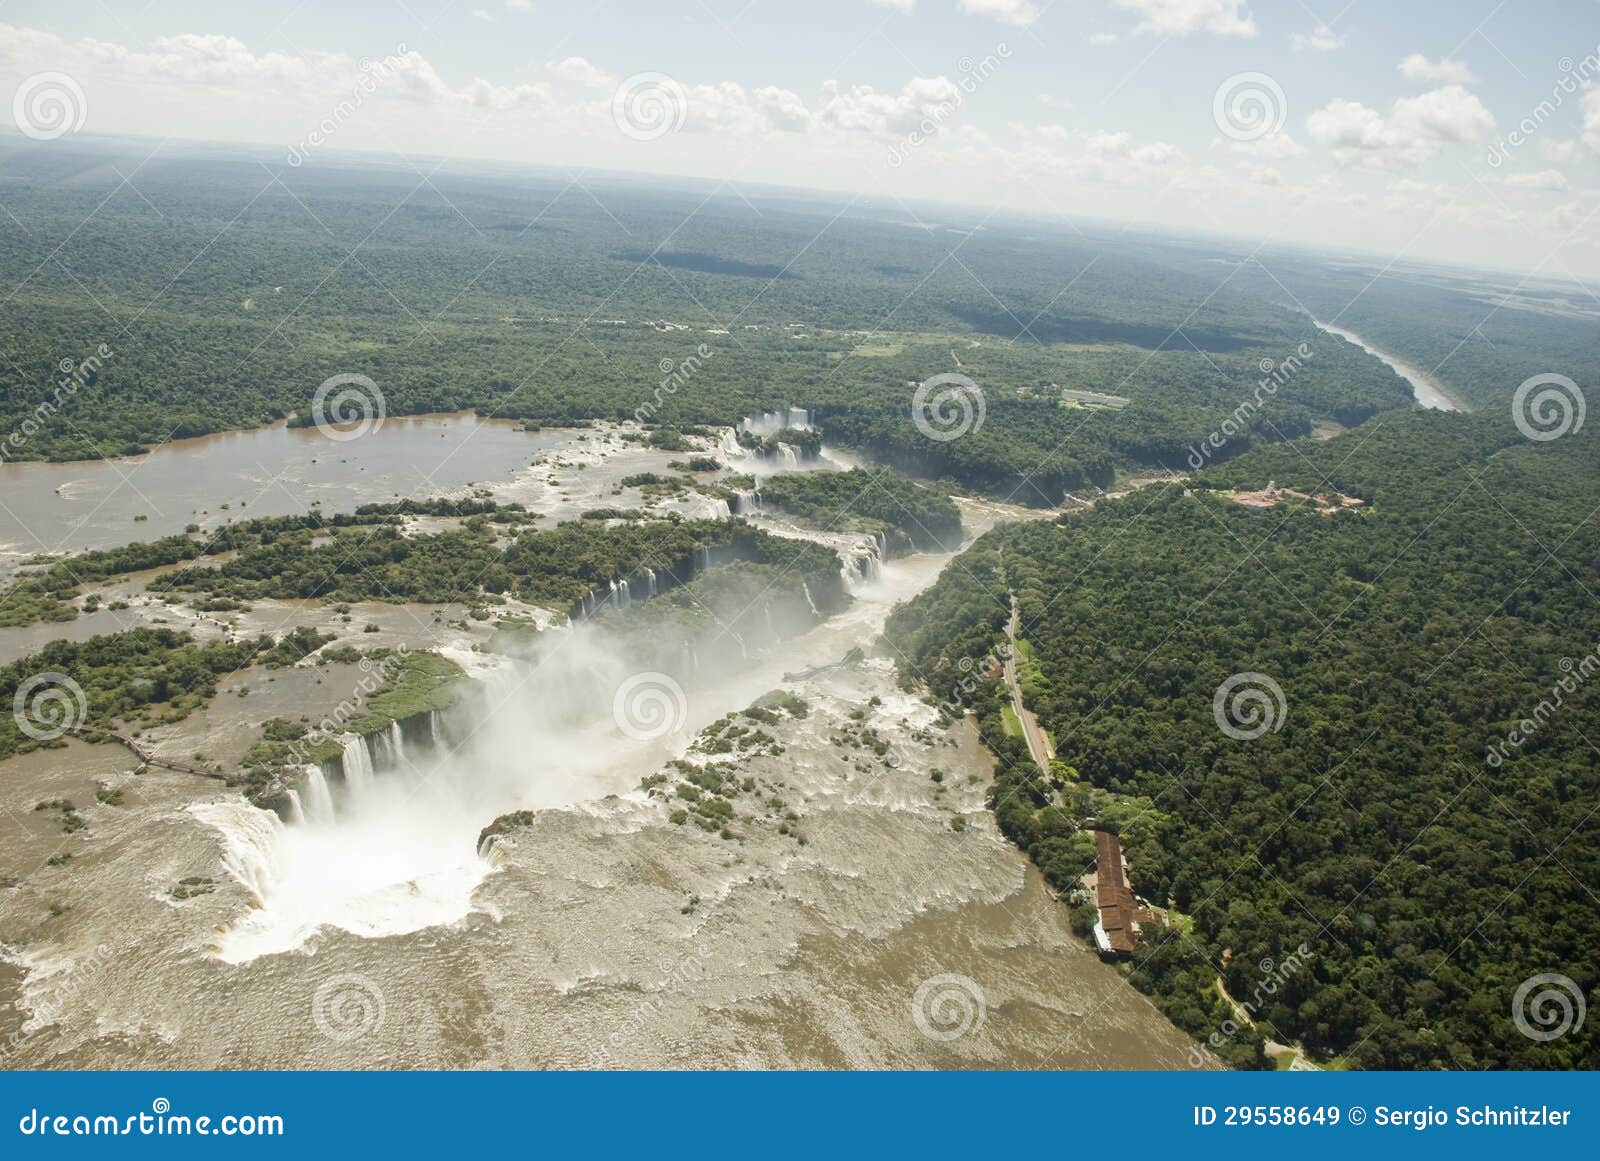 iguassu falls aerial view